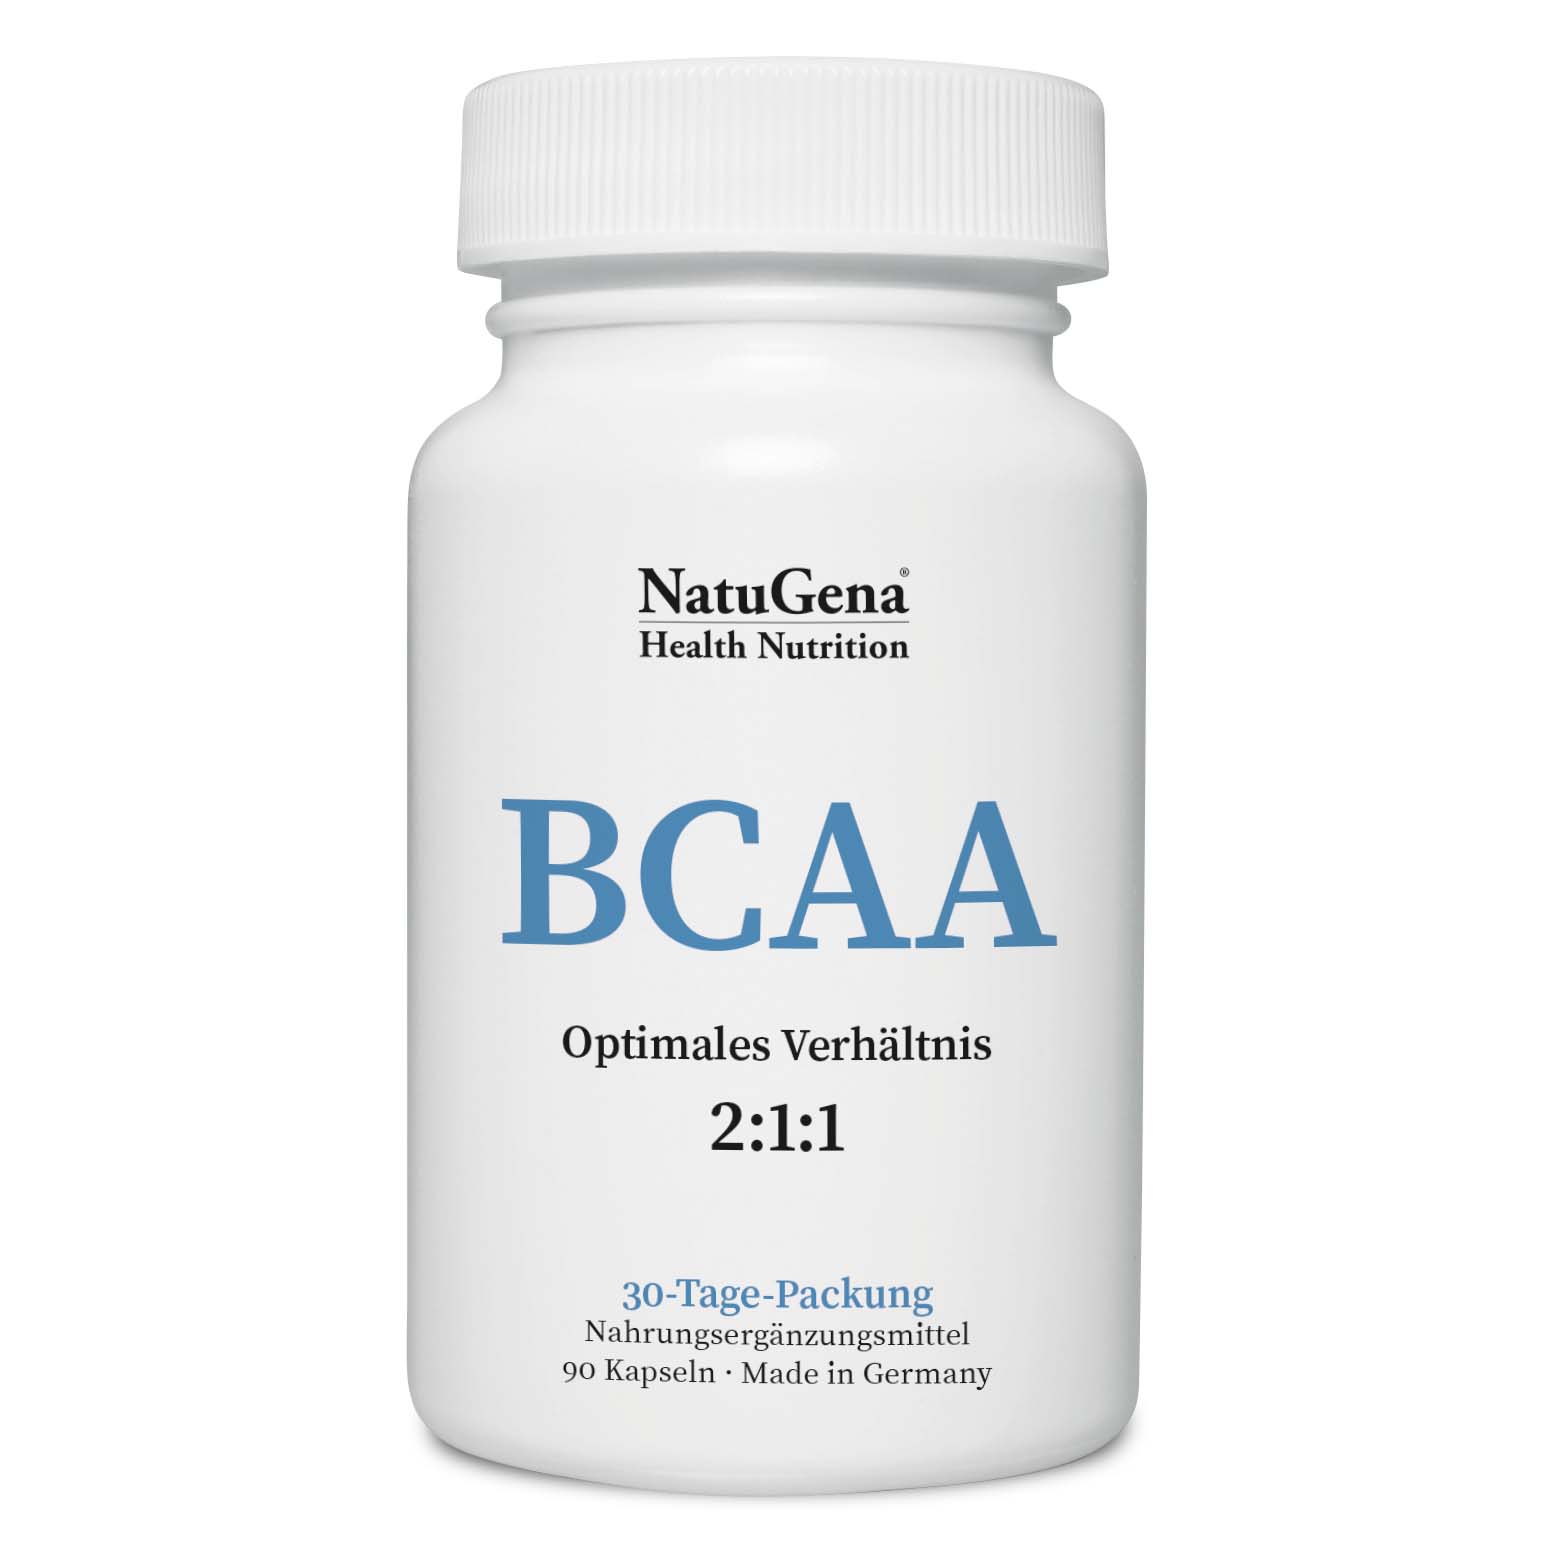 NatuGena BCAA Optimales 2:1:1-Verhältnis | 90 Kapseln - Unterstützt Muskelregeneration und Stoffwechsel